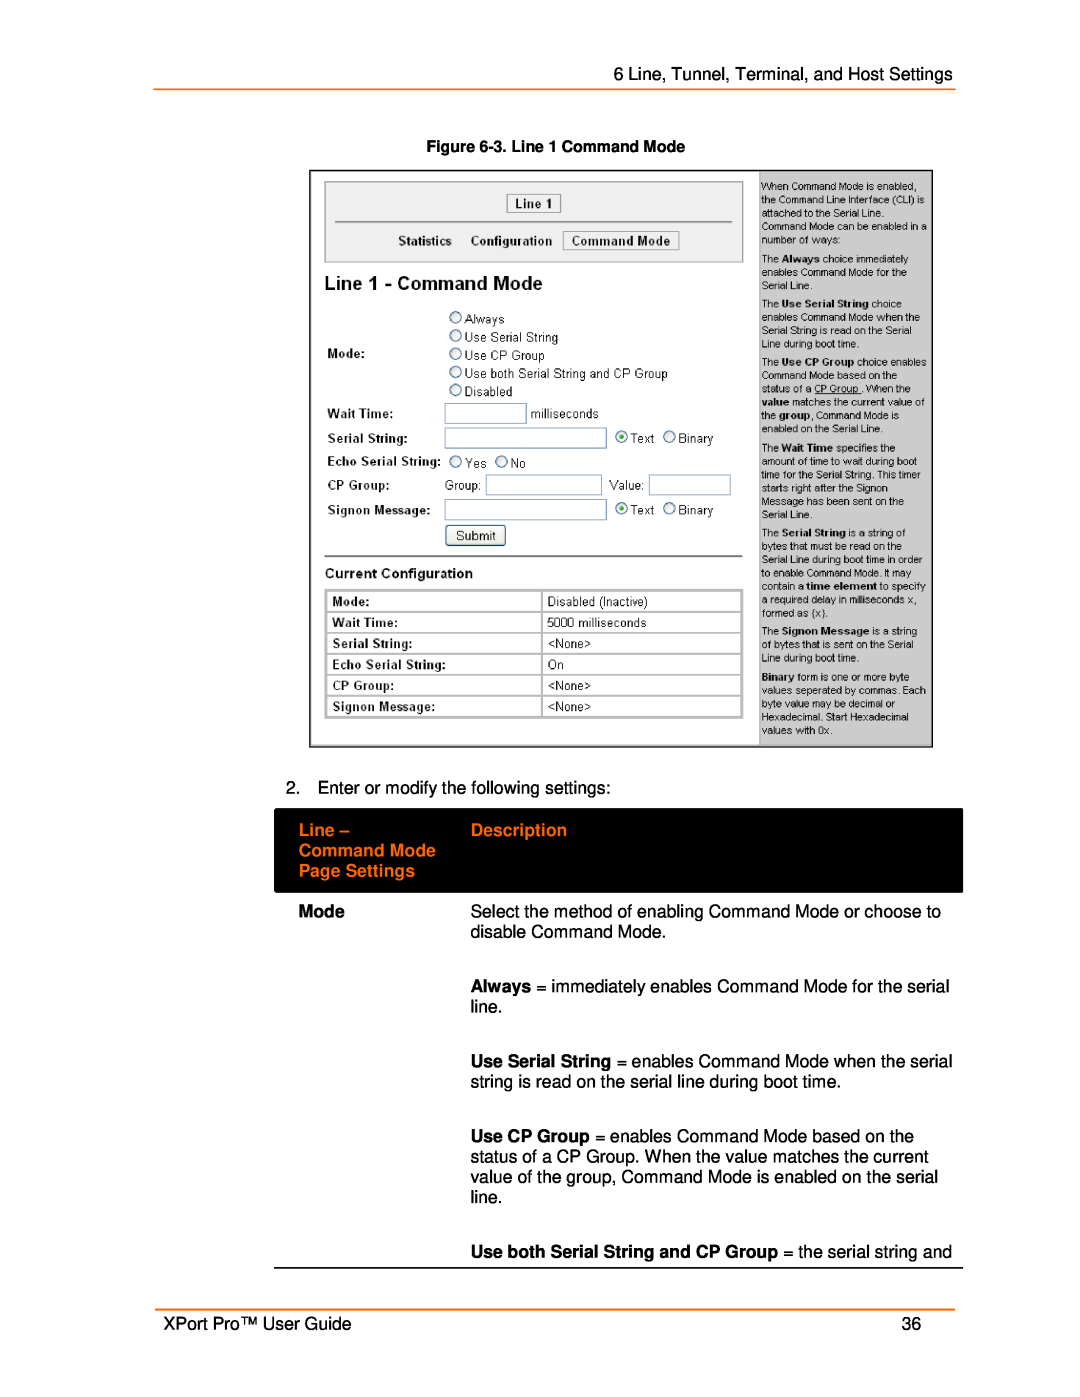 Lantronix 900-560 manual Description, Page Settings, 3. Line 1 Command Mode 